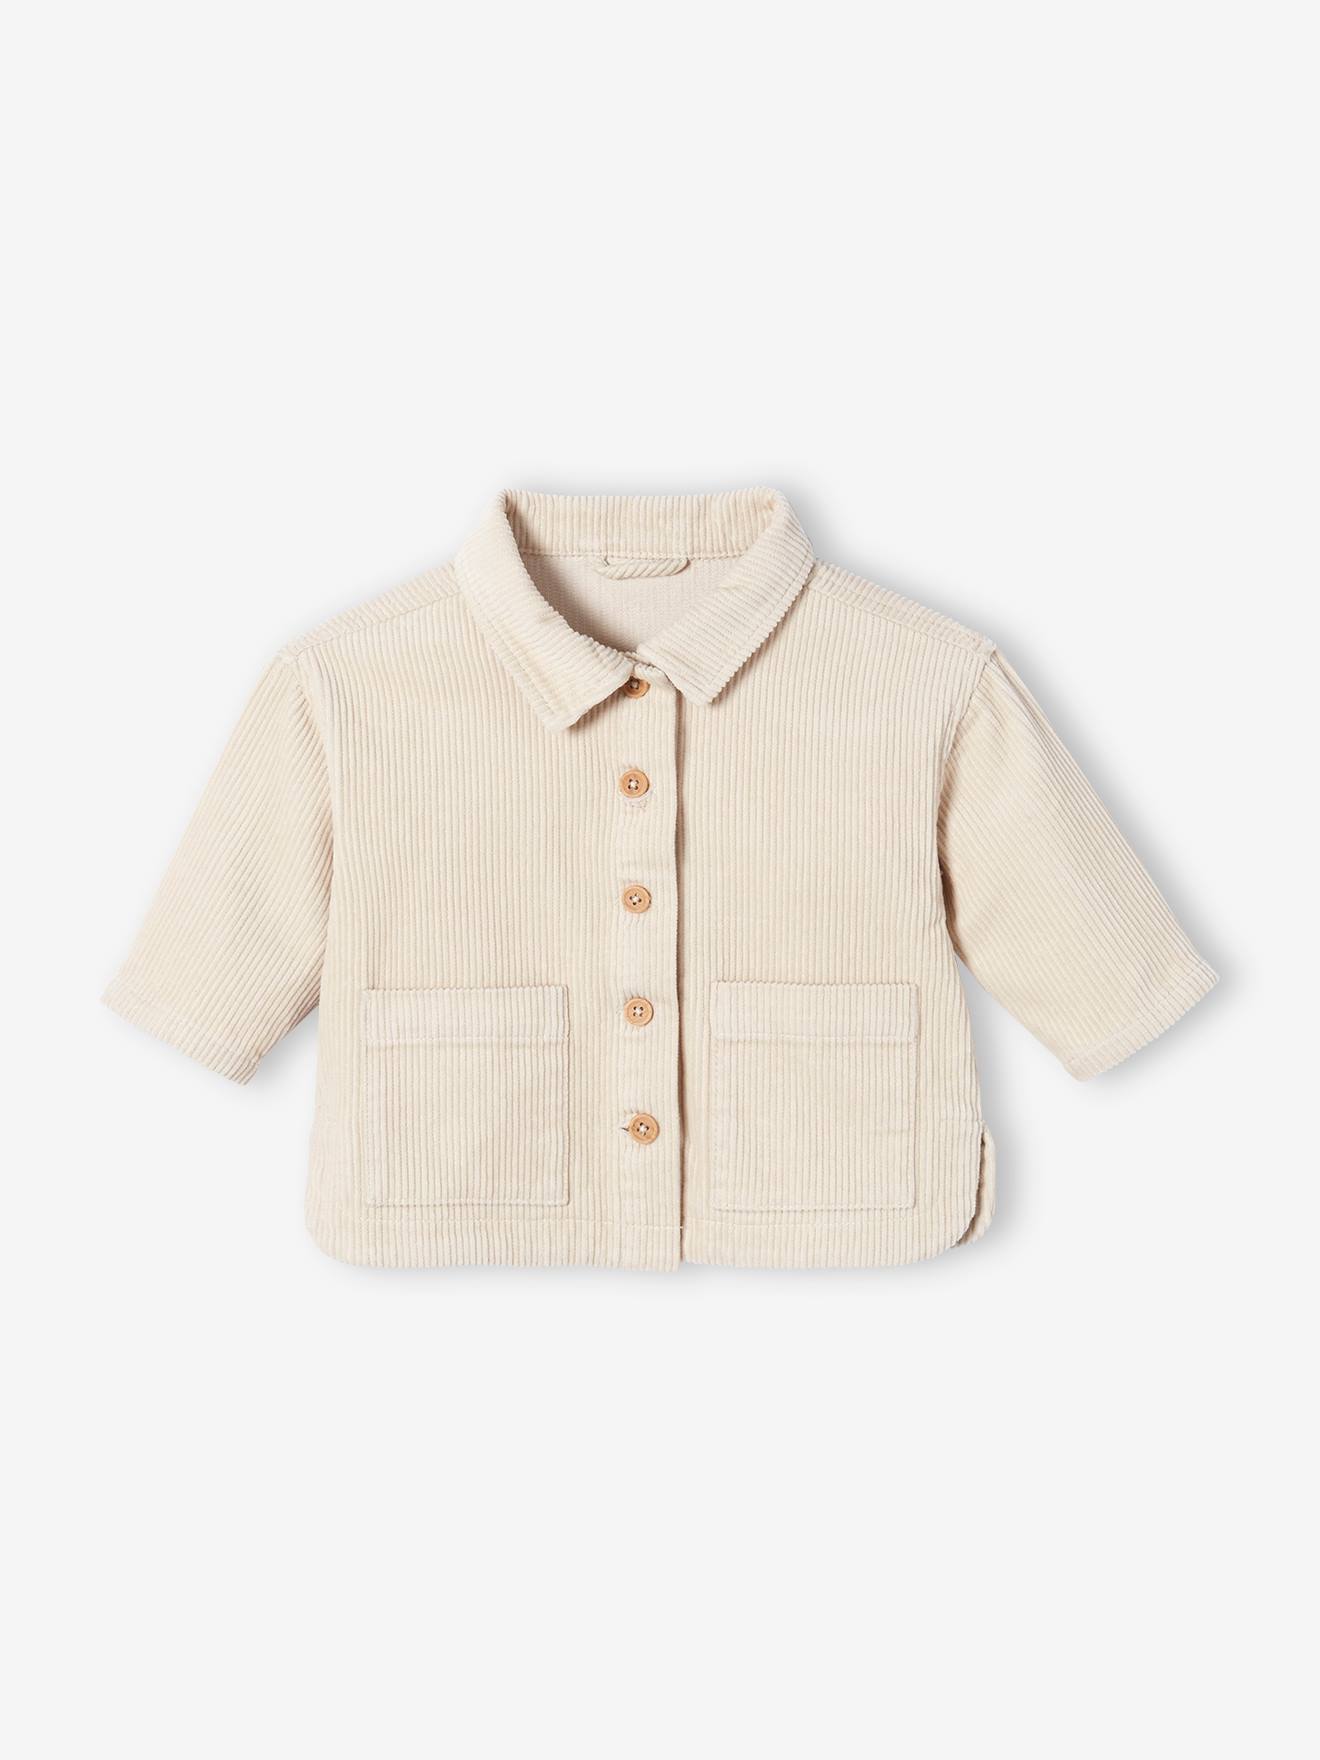 Overhemd voor baby van ribfluweel ecru